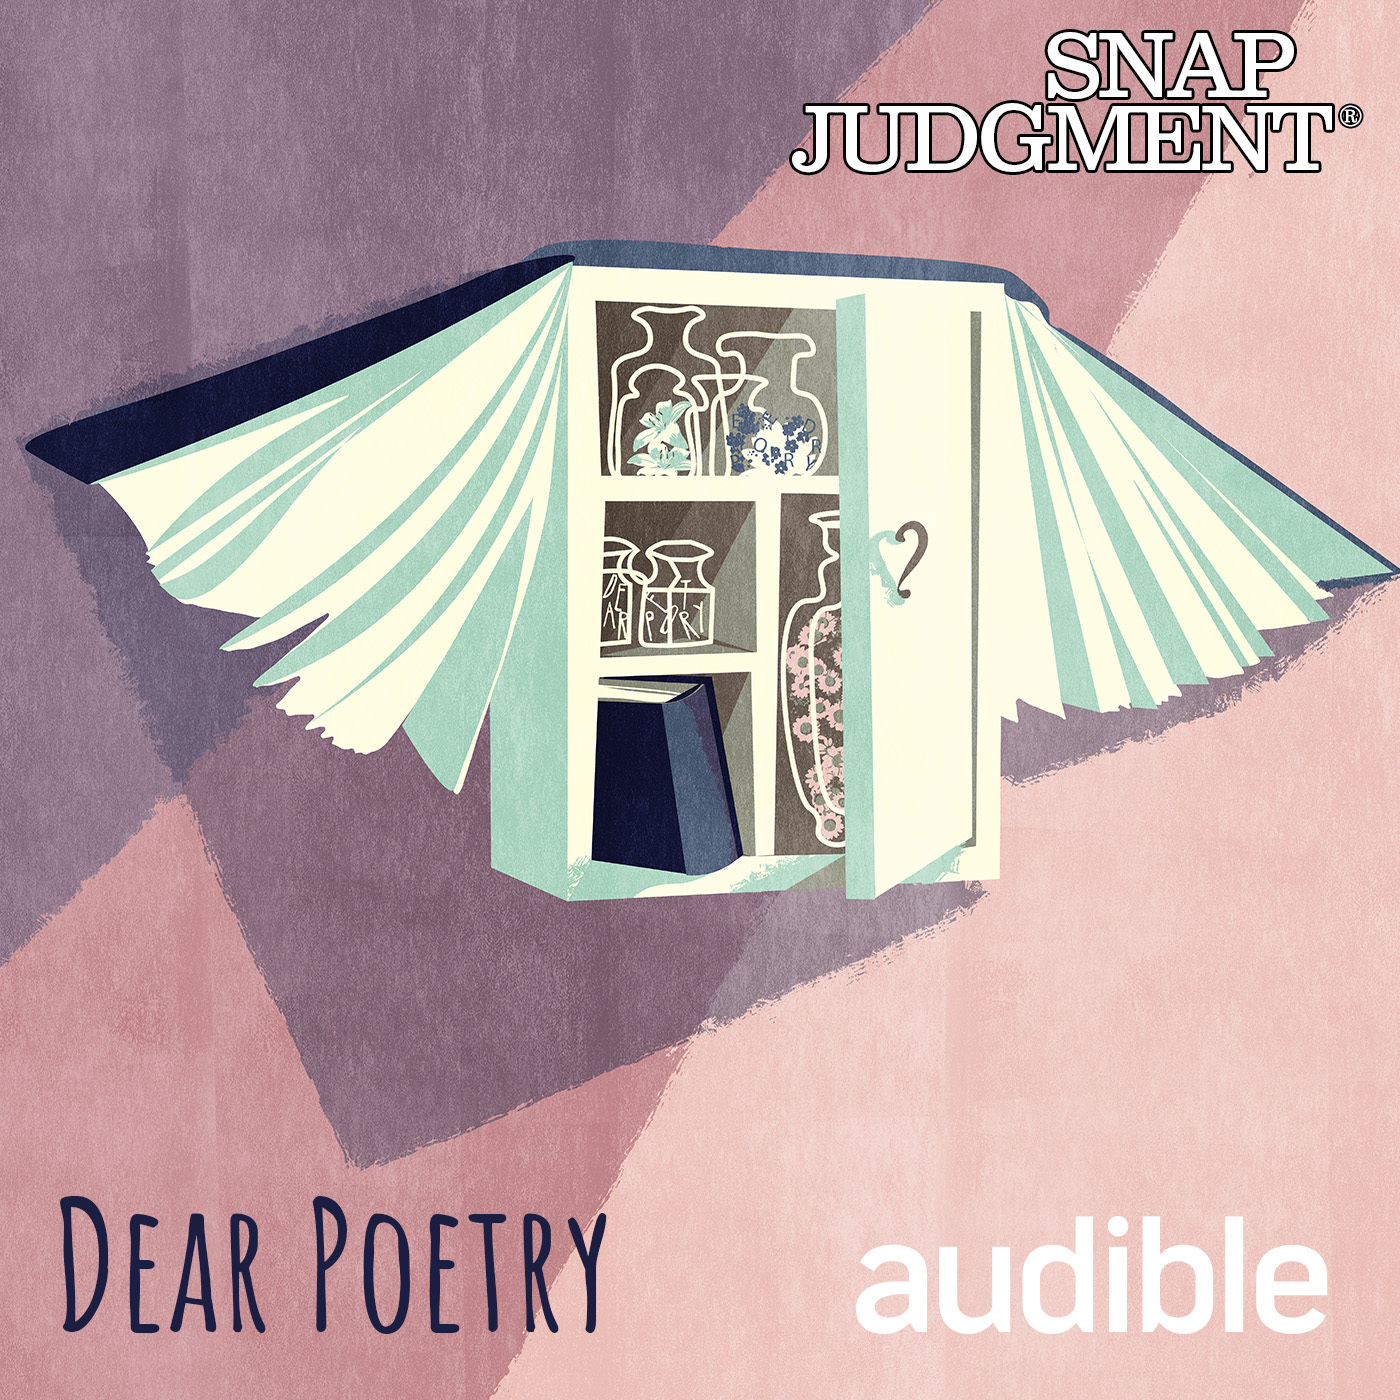 Dear Poetry